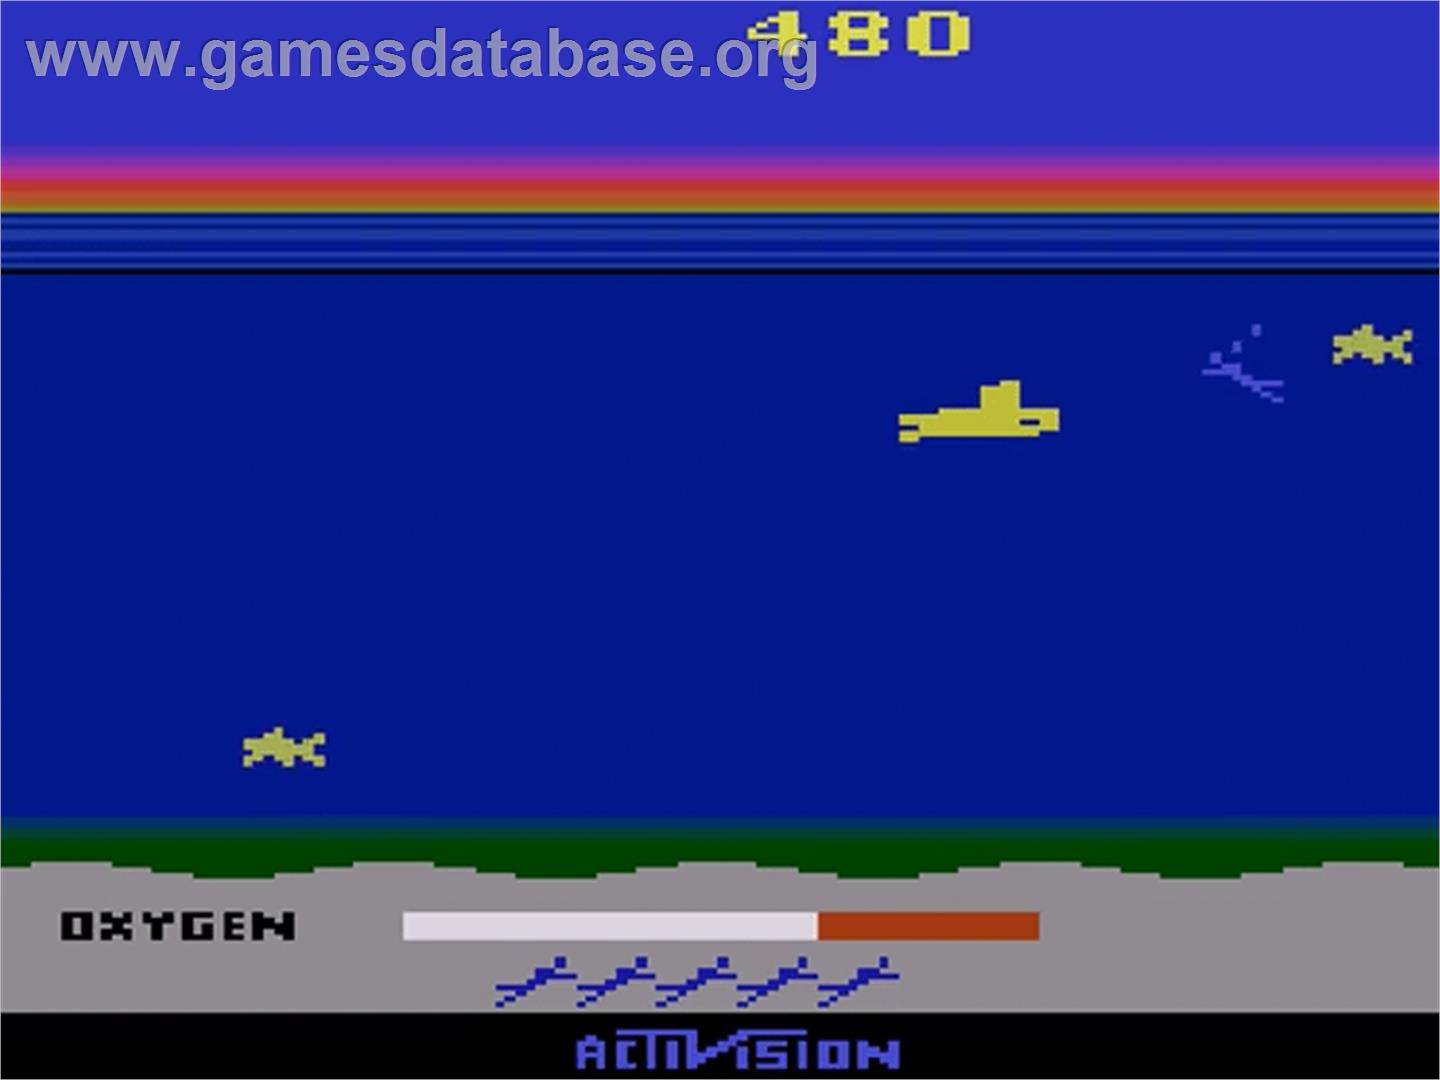 Seaquest - Atari 2600 - Artwork - In Game